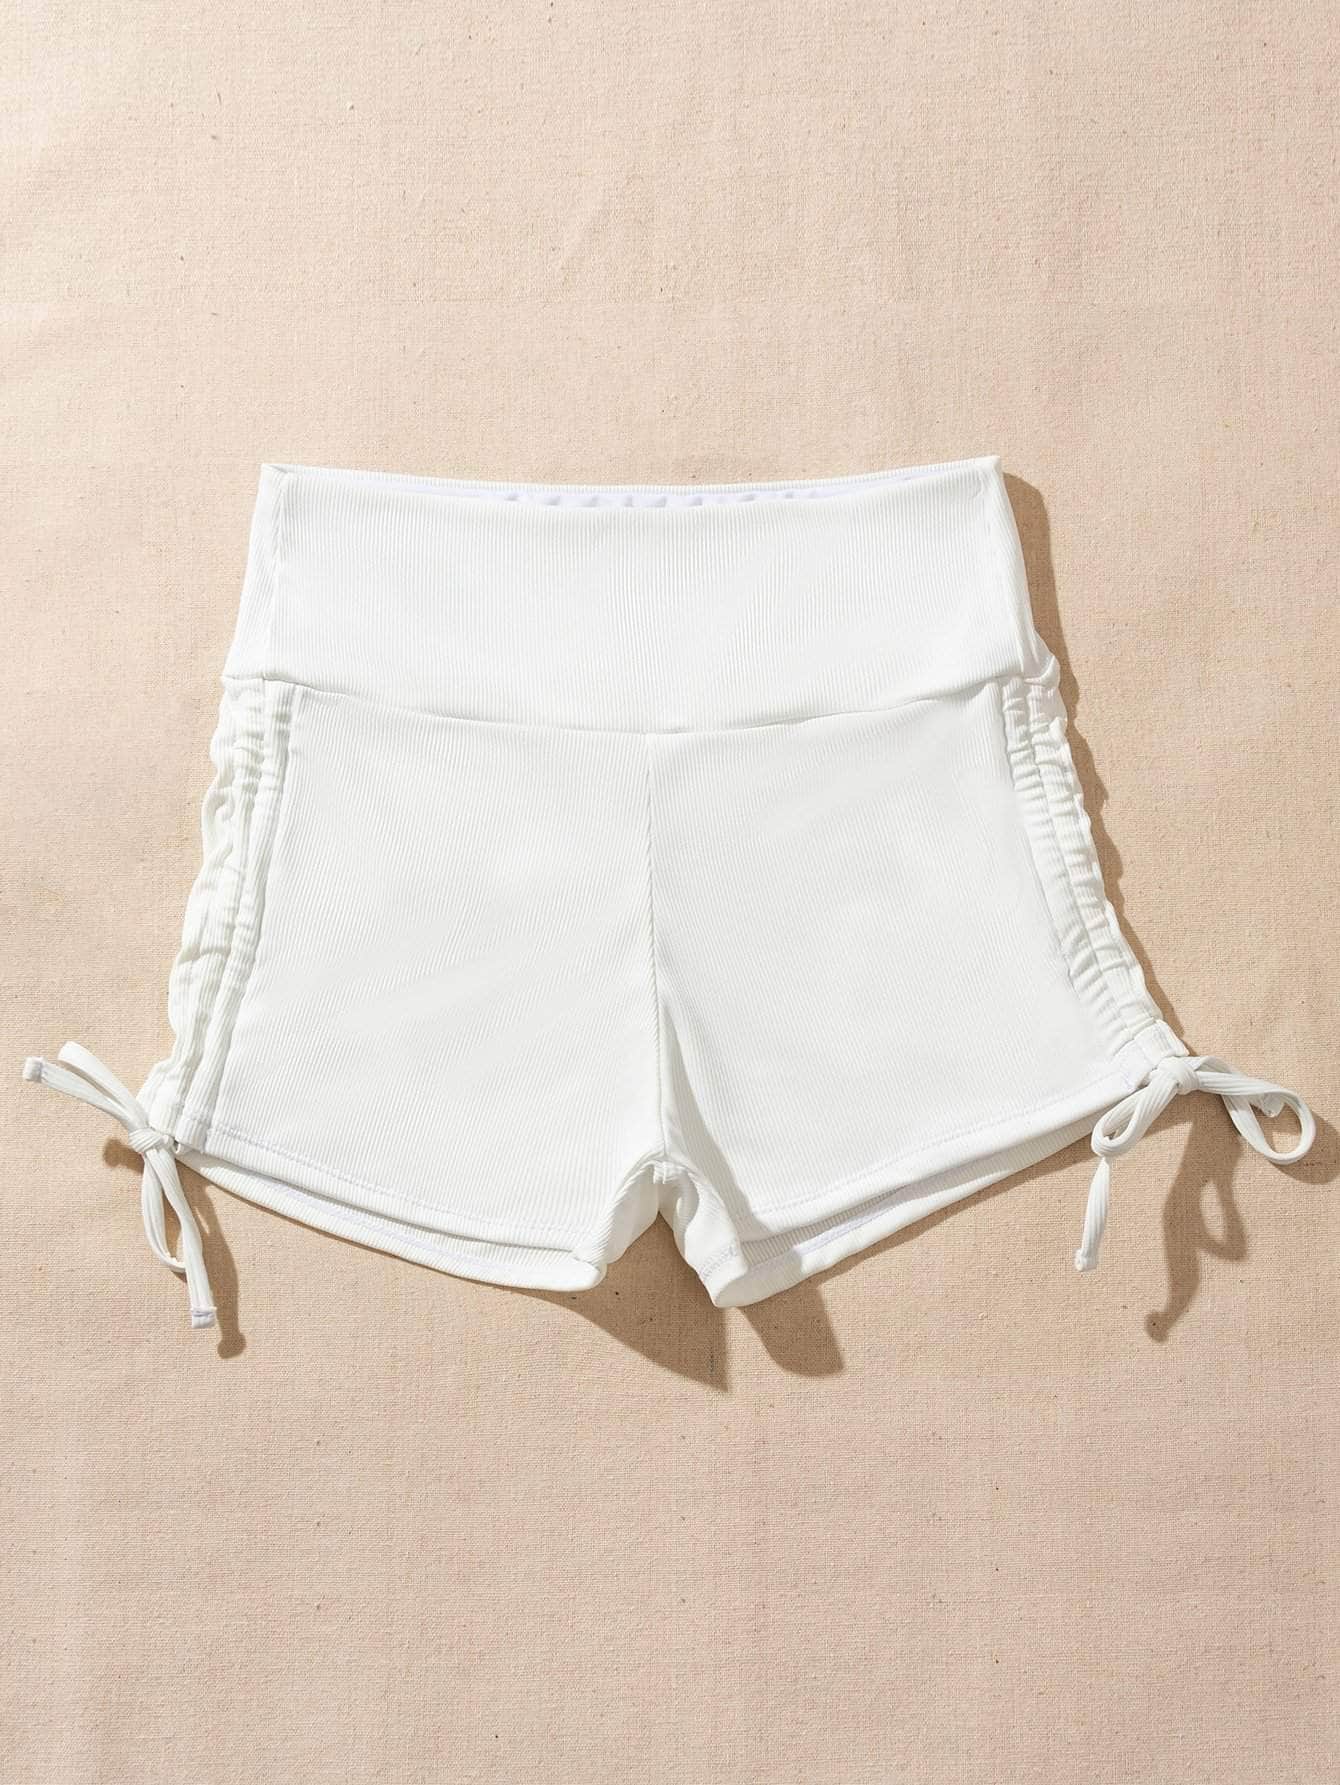 Shorts bikini con cordón lateral